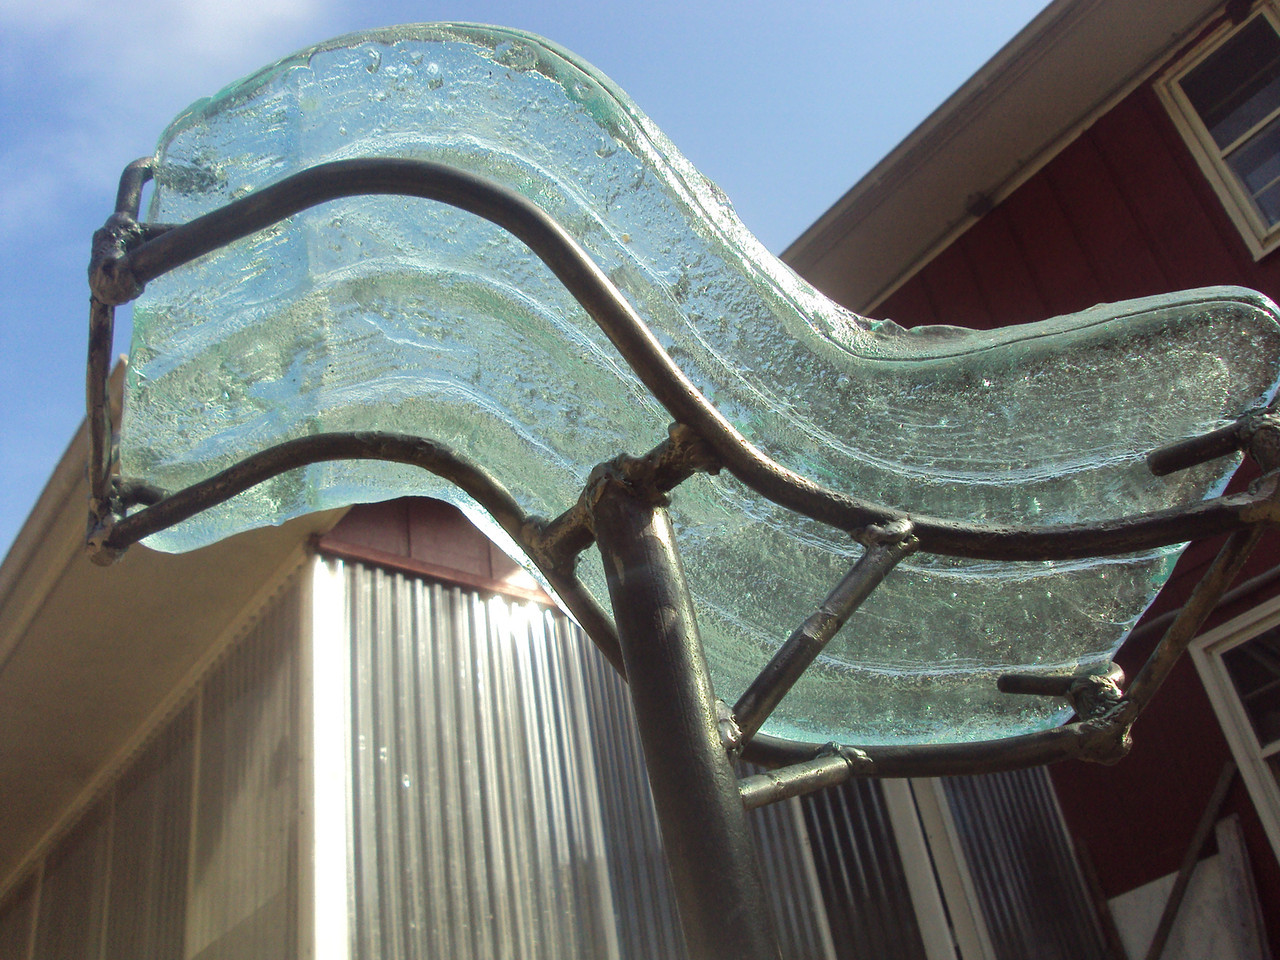 sculpture-glass-bronze.jpg